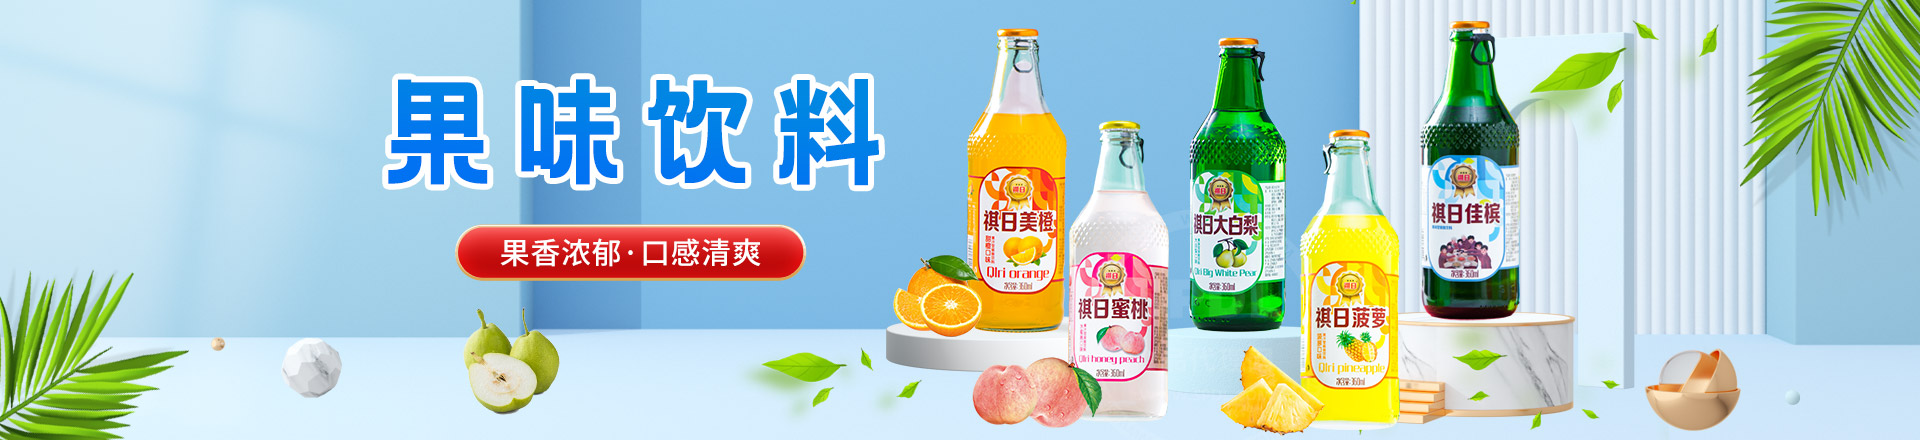 佳木斯江城饮料制造有限公司